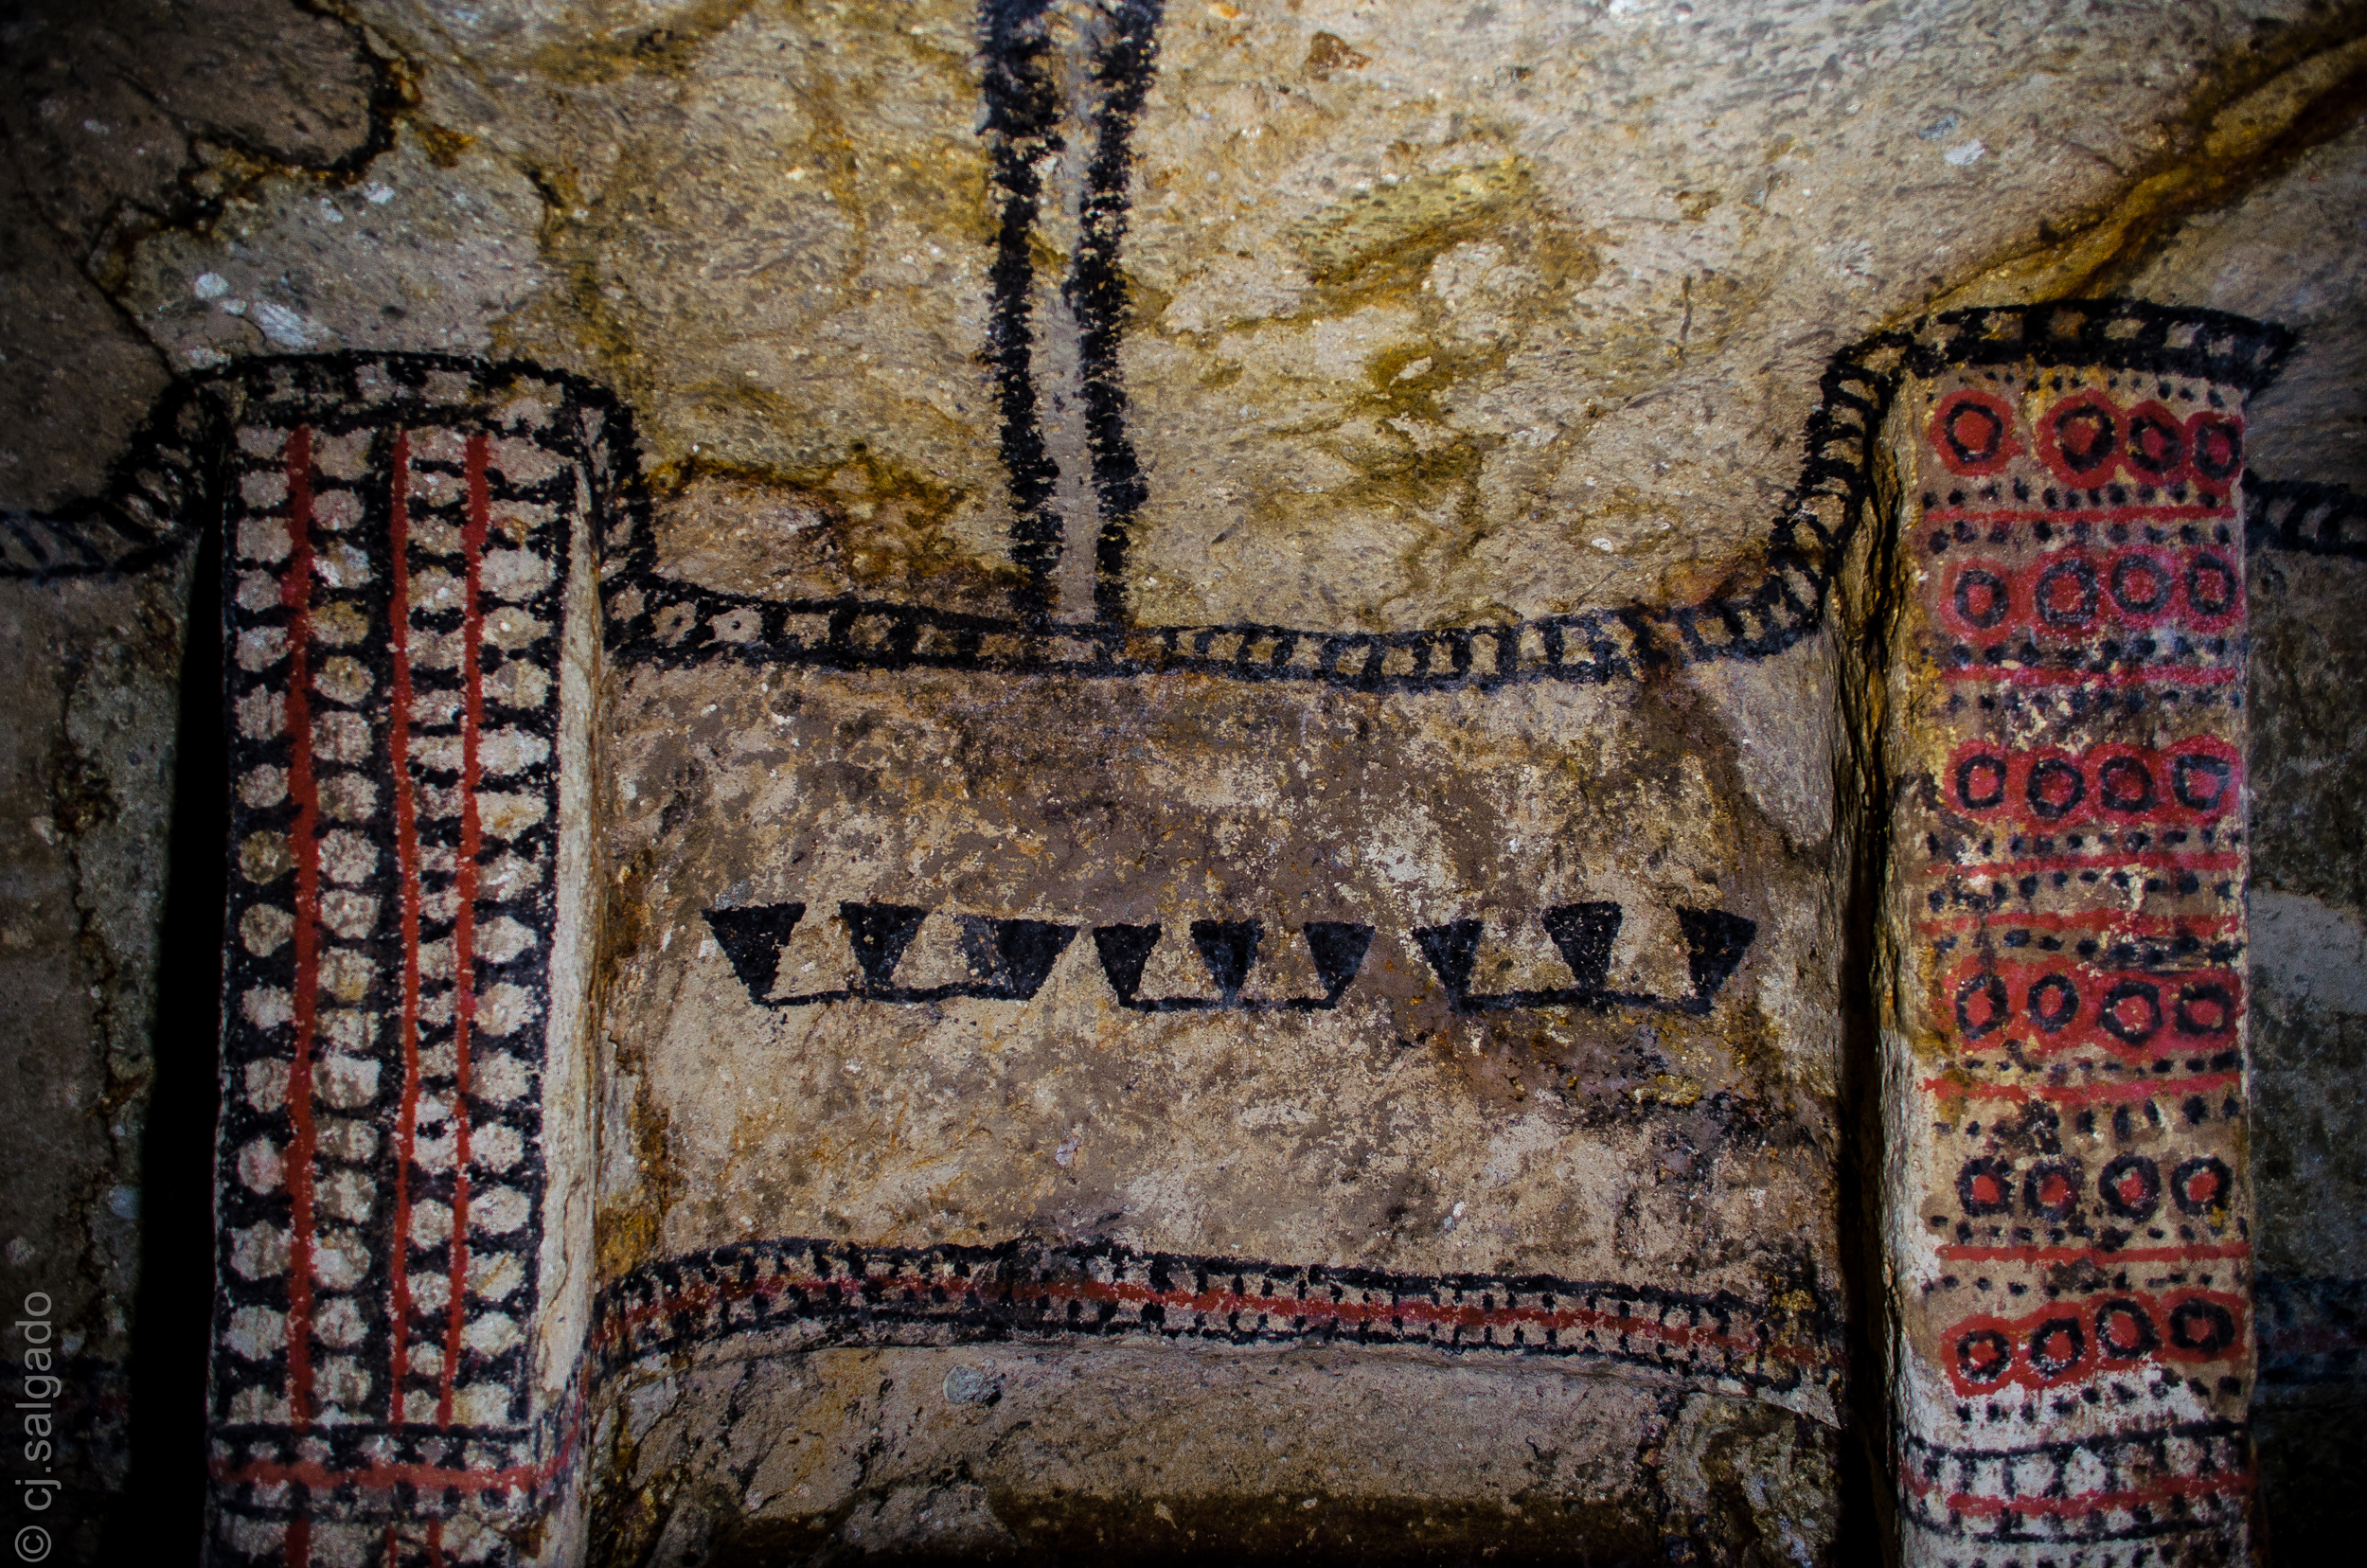  Patrimonio de la UNESCO, en Tierradentro encontramos tumbas que se estiman que fueron construidas entre 2000 a.c. hasta 900 d.c. por la cultura Nasa. De hasta 6 metros de profundidad, talladas en roca y decoradas con talles y frescos en las paredes.